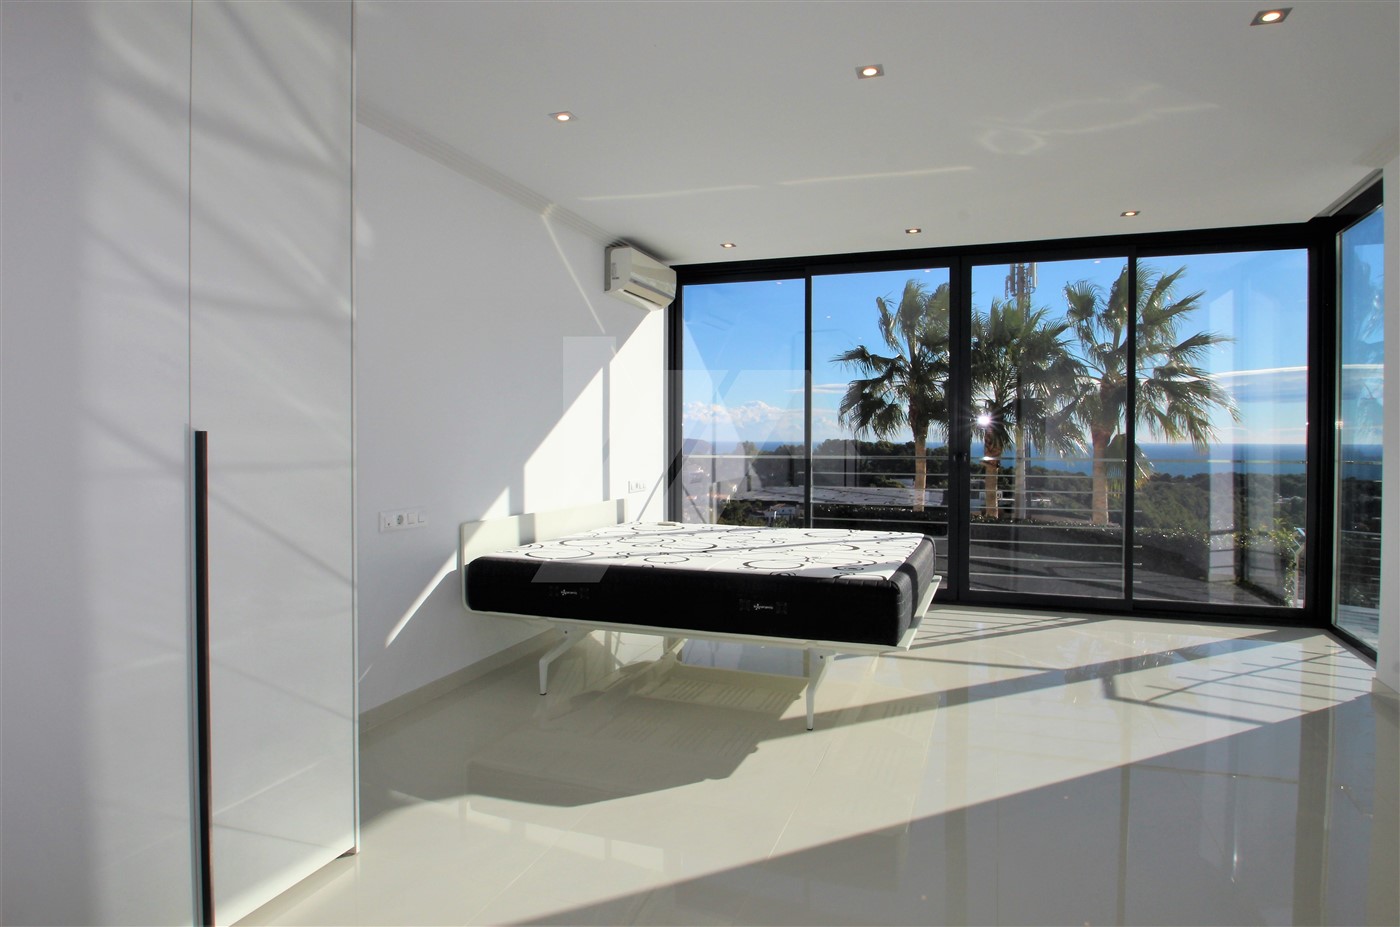 Luxury sea view villa for sale in Benissa, Costa Blanca.